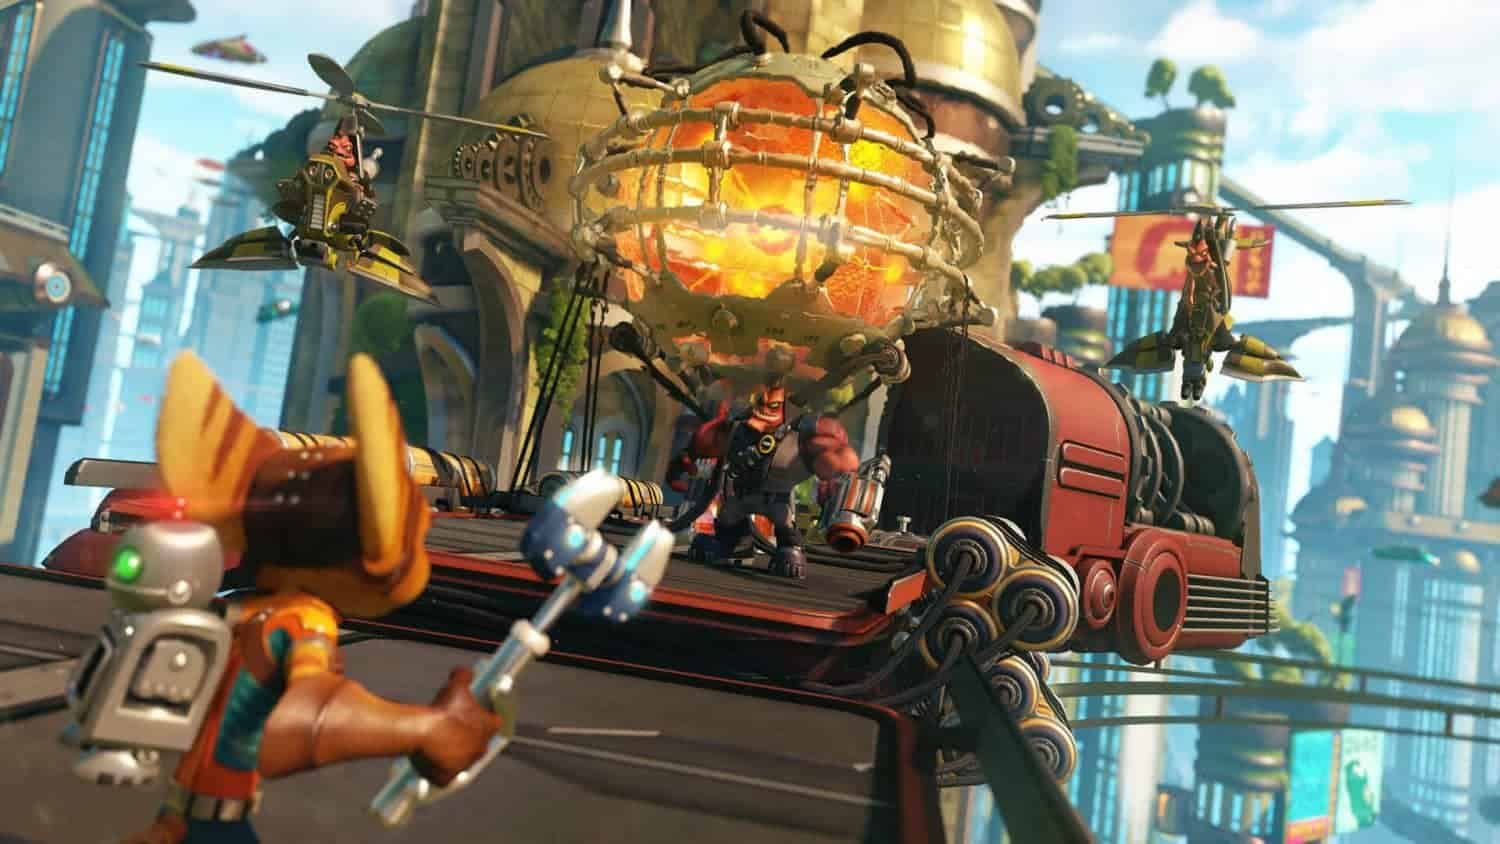 De vernieuwde Ratchet and Clank voor de PS4